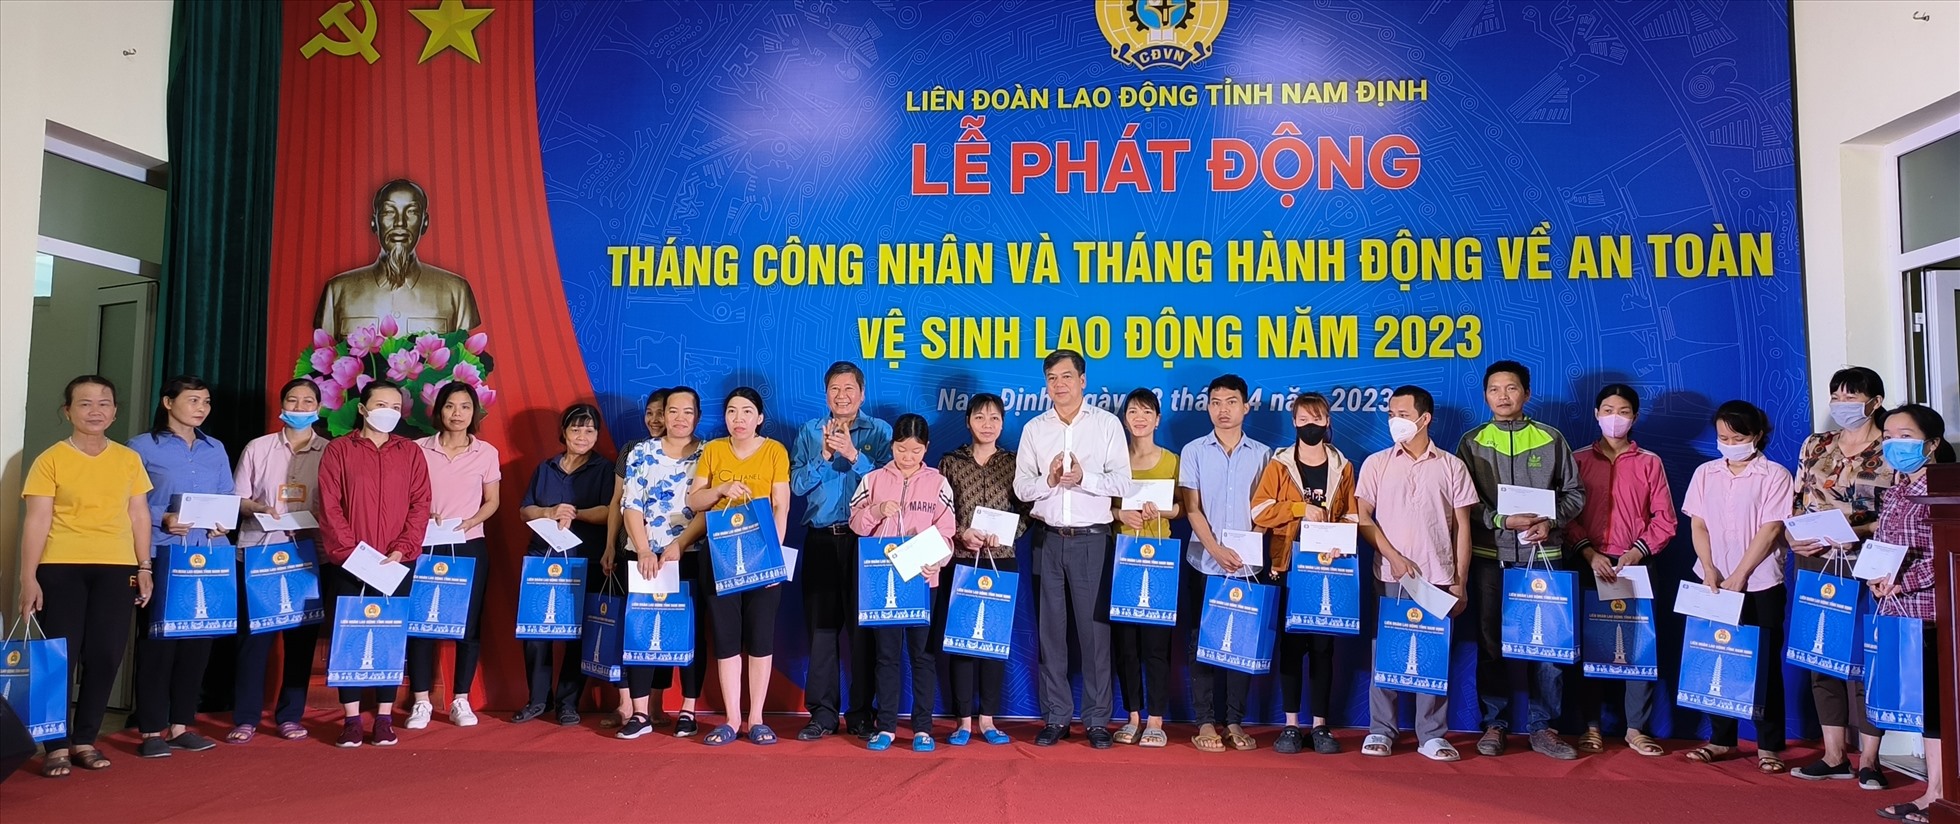 Nam Định: Trao quà cho 50 công nhân khó khăn, bị tai nạn lao động